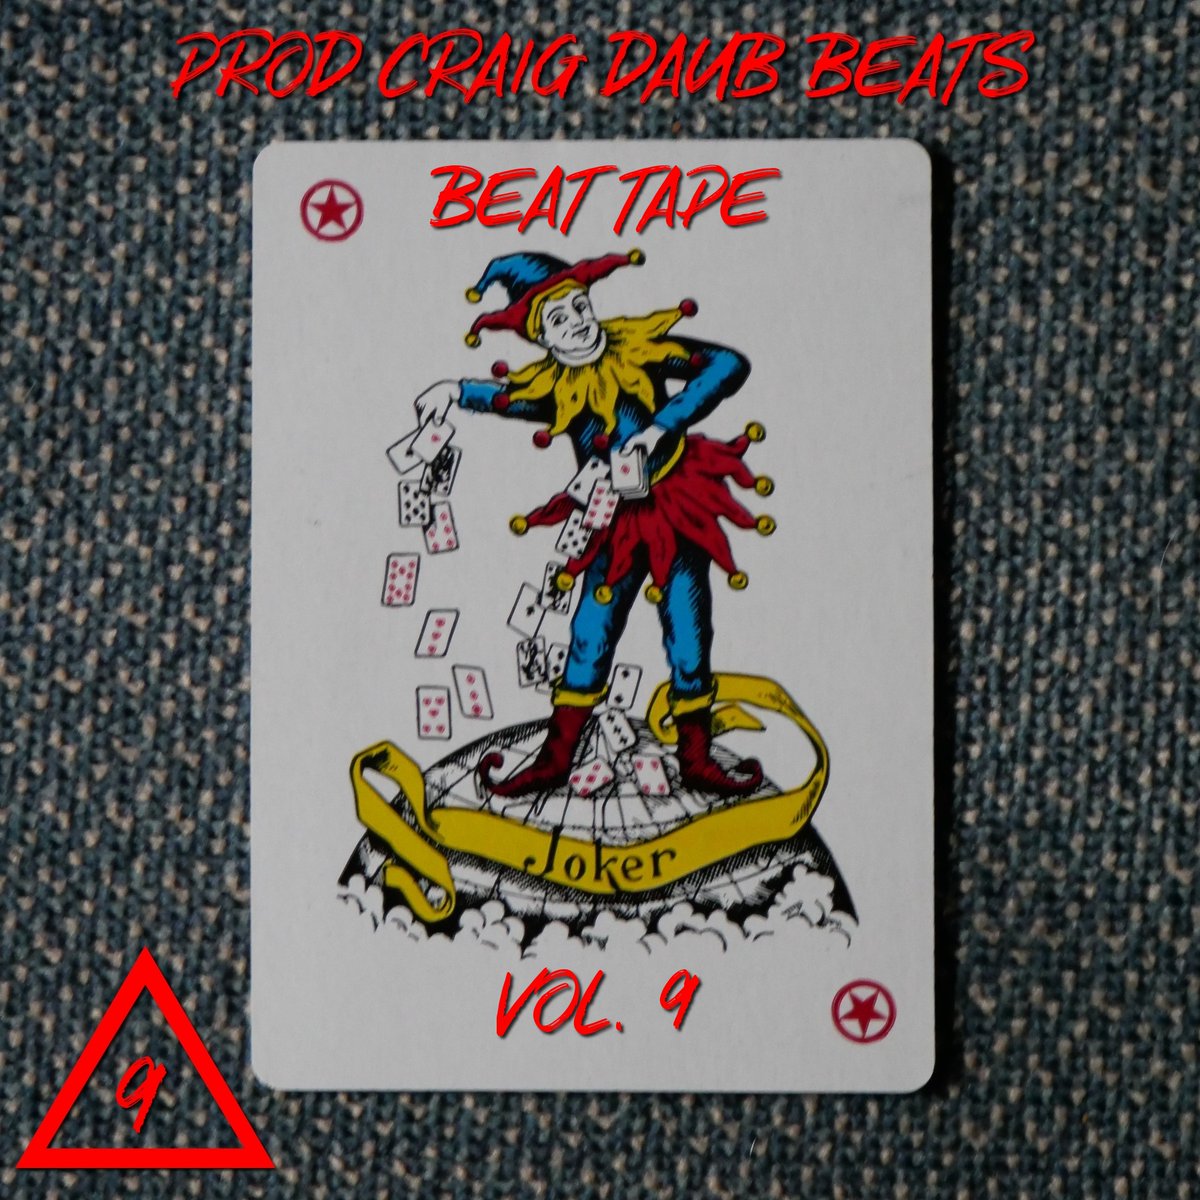 Joker Vol 9 2024 #BeatTape 10 Pack of Instrumentals by craigdaubbeats @BeatStars bsta.rs/GHaBsK #beats #instrumentals #music #rap #hiphop #producer #beatmaker #craigdaubbeats #craigsonfire #beatstore #buybeats #leasebeats #beatsforsale #beatsforlease #beats4sale